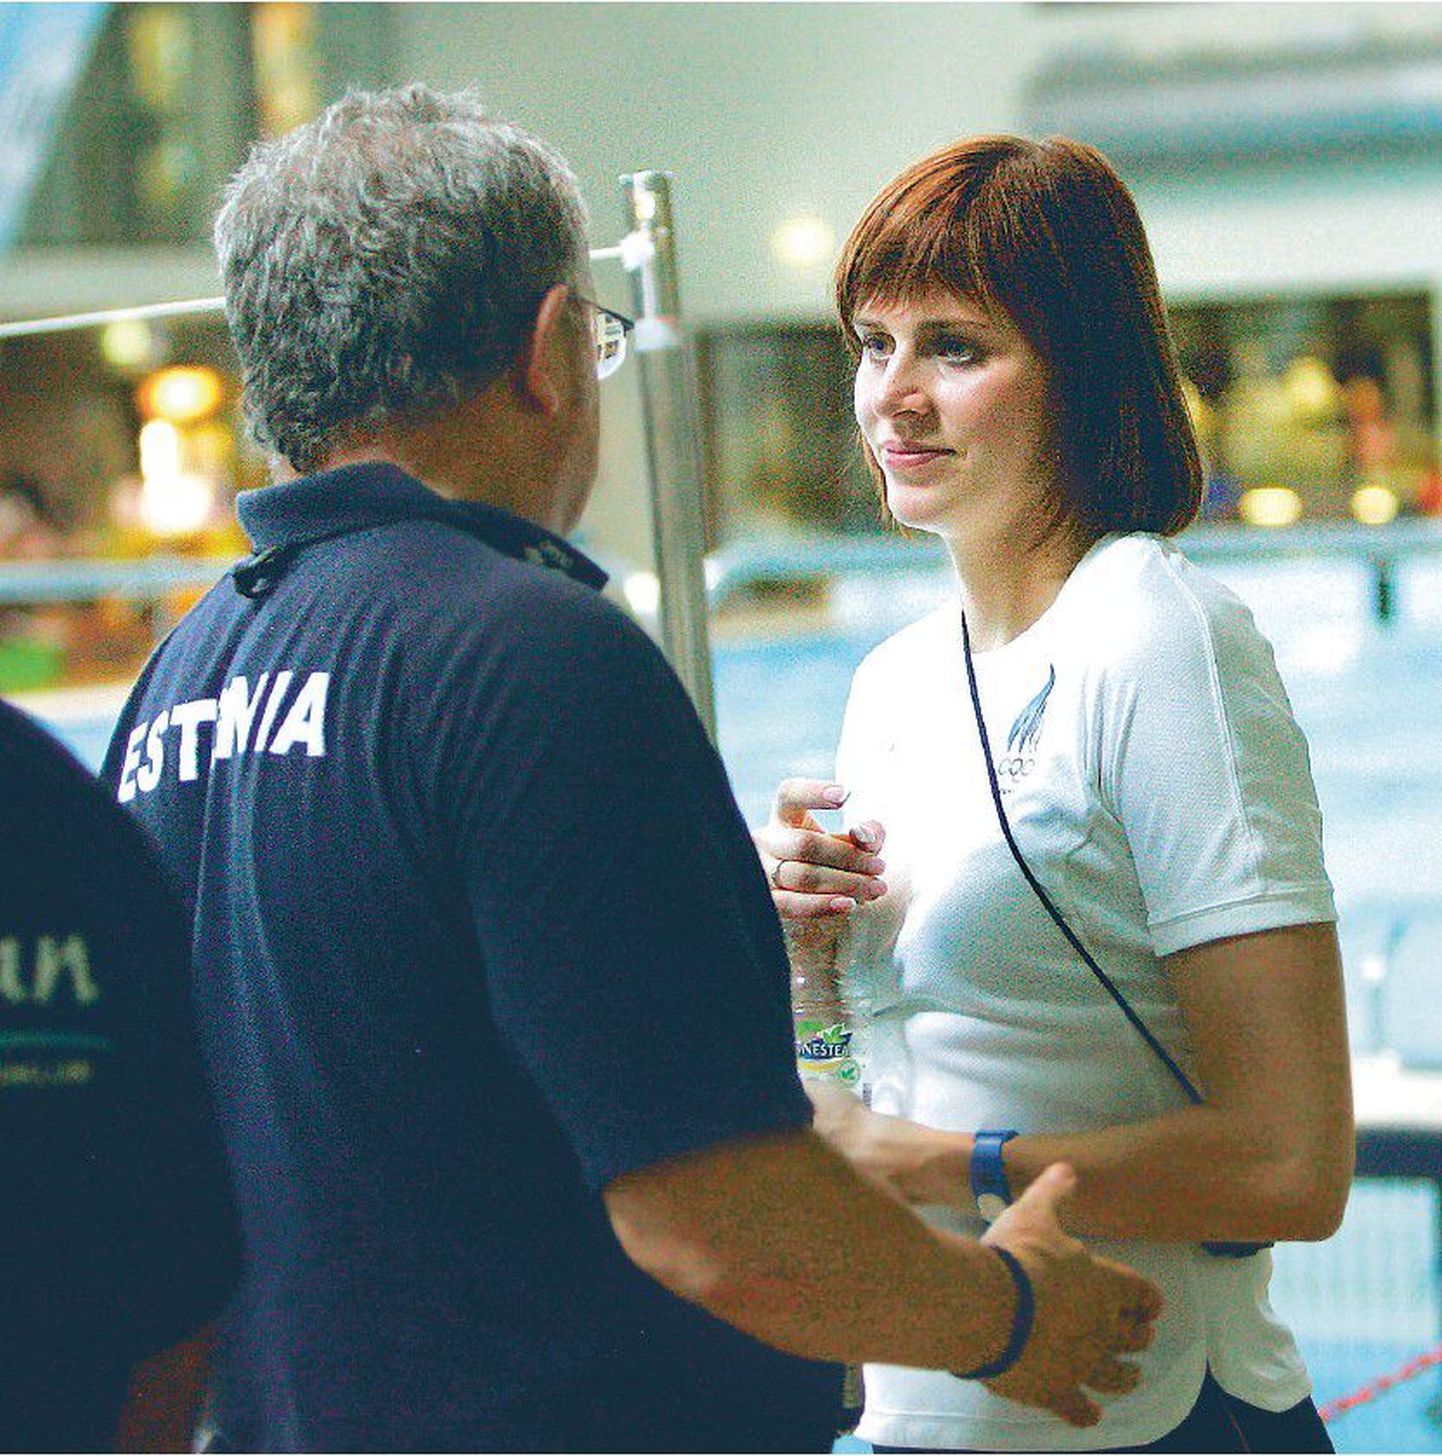 Eesti ujumiskoondise peatreener Tõnu Meijel pidas 25-aastase Elina Partõkaga eile maha tõsise vestluse. Tippspordis jätkamise otsuse saab langetada aga vaid piiga ise. Mitte keegi teine seda tema eest ei tee.